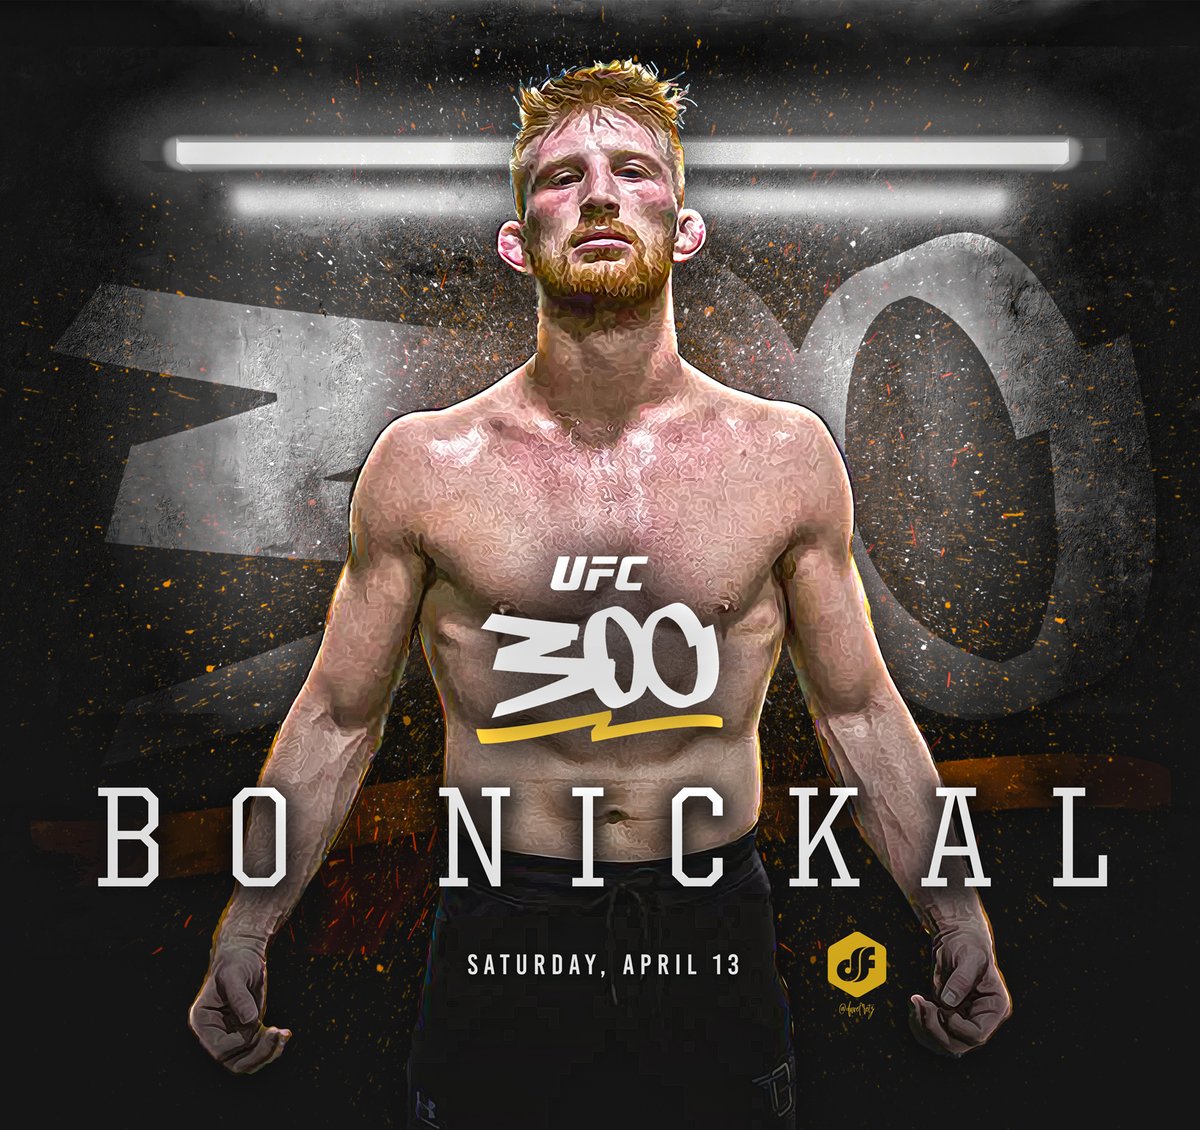 Congratulations @NoBickal #UFC300